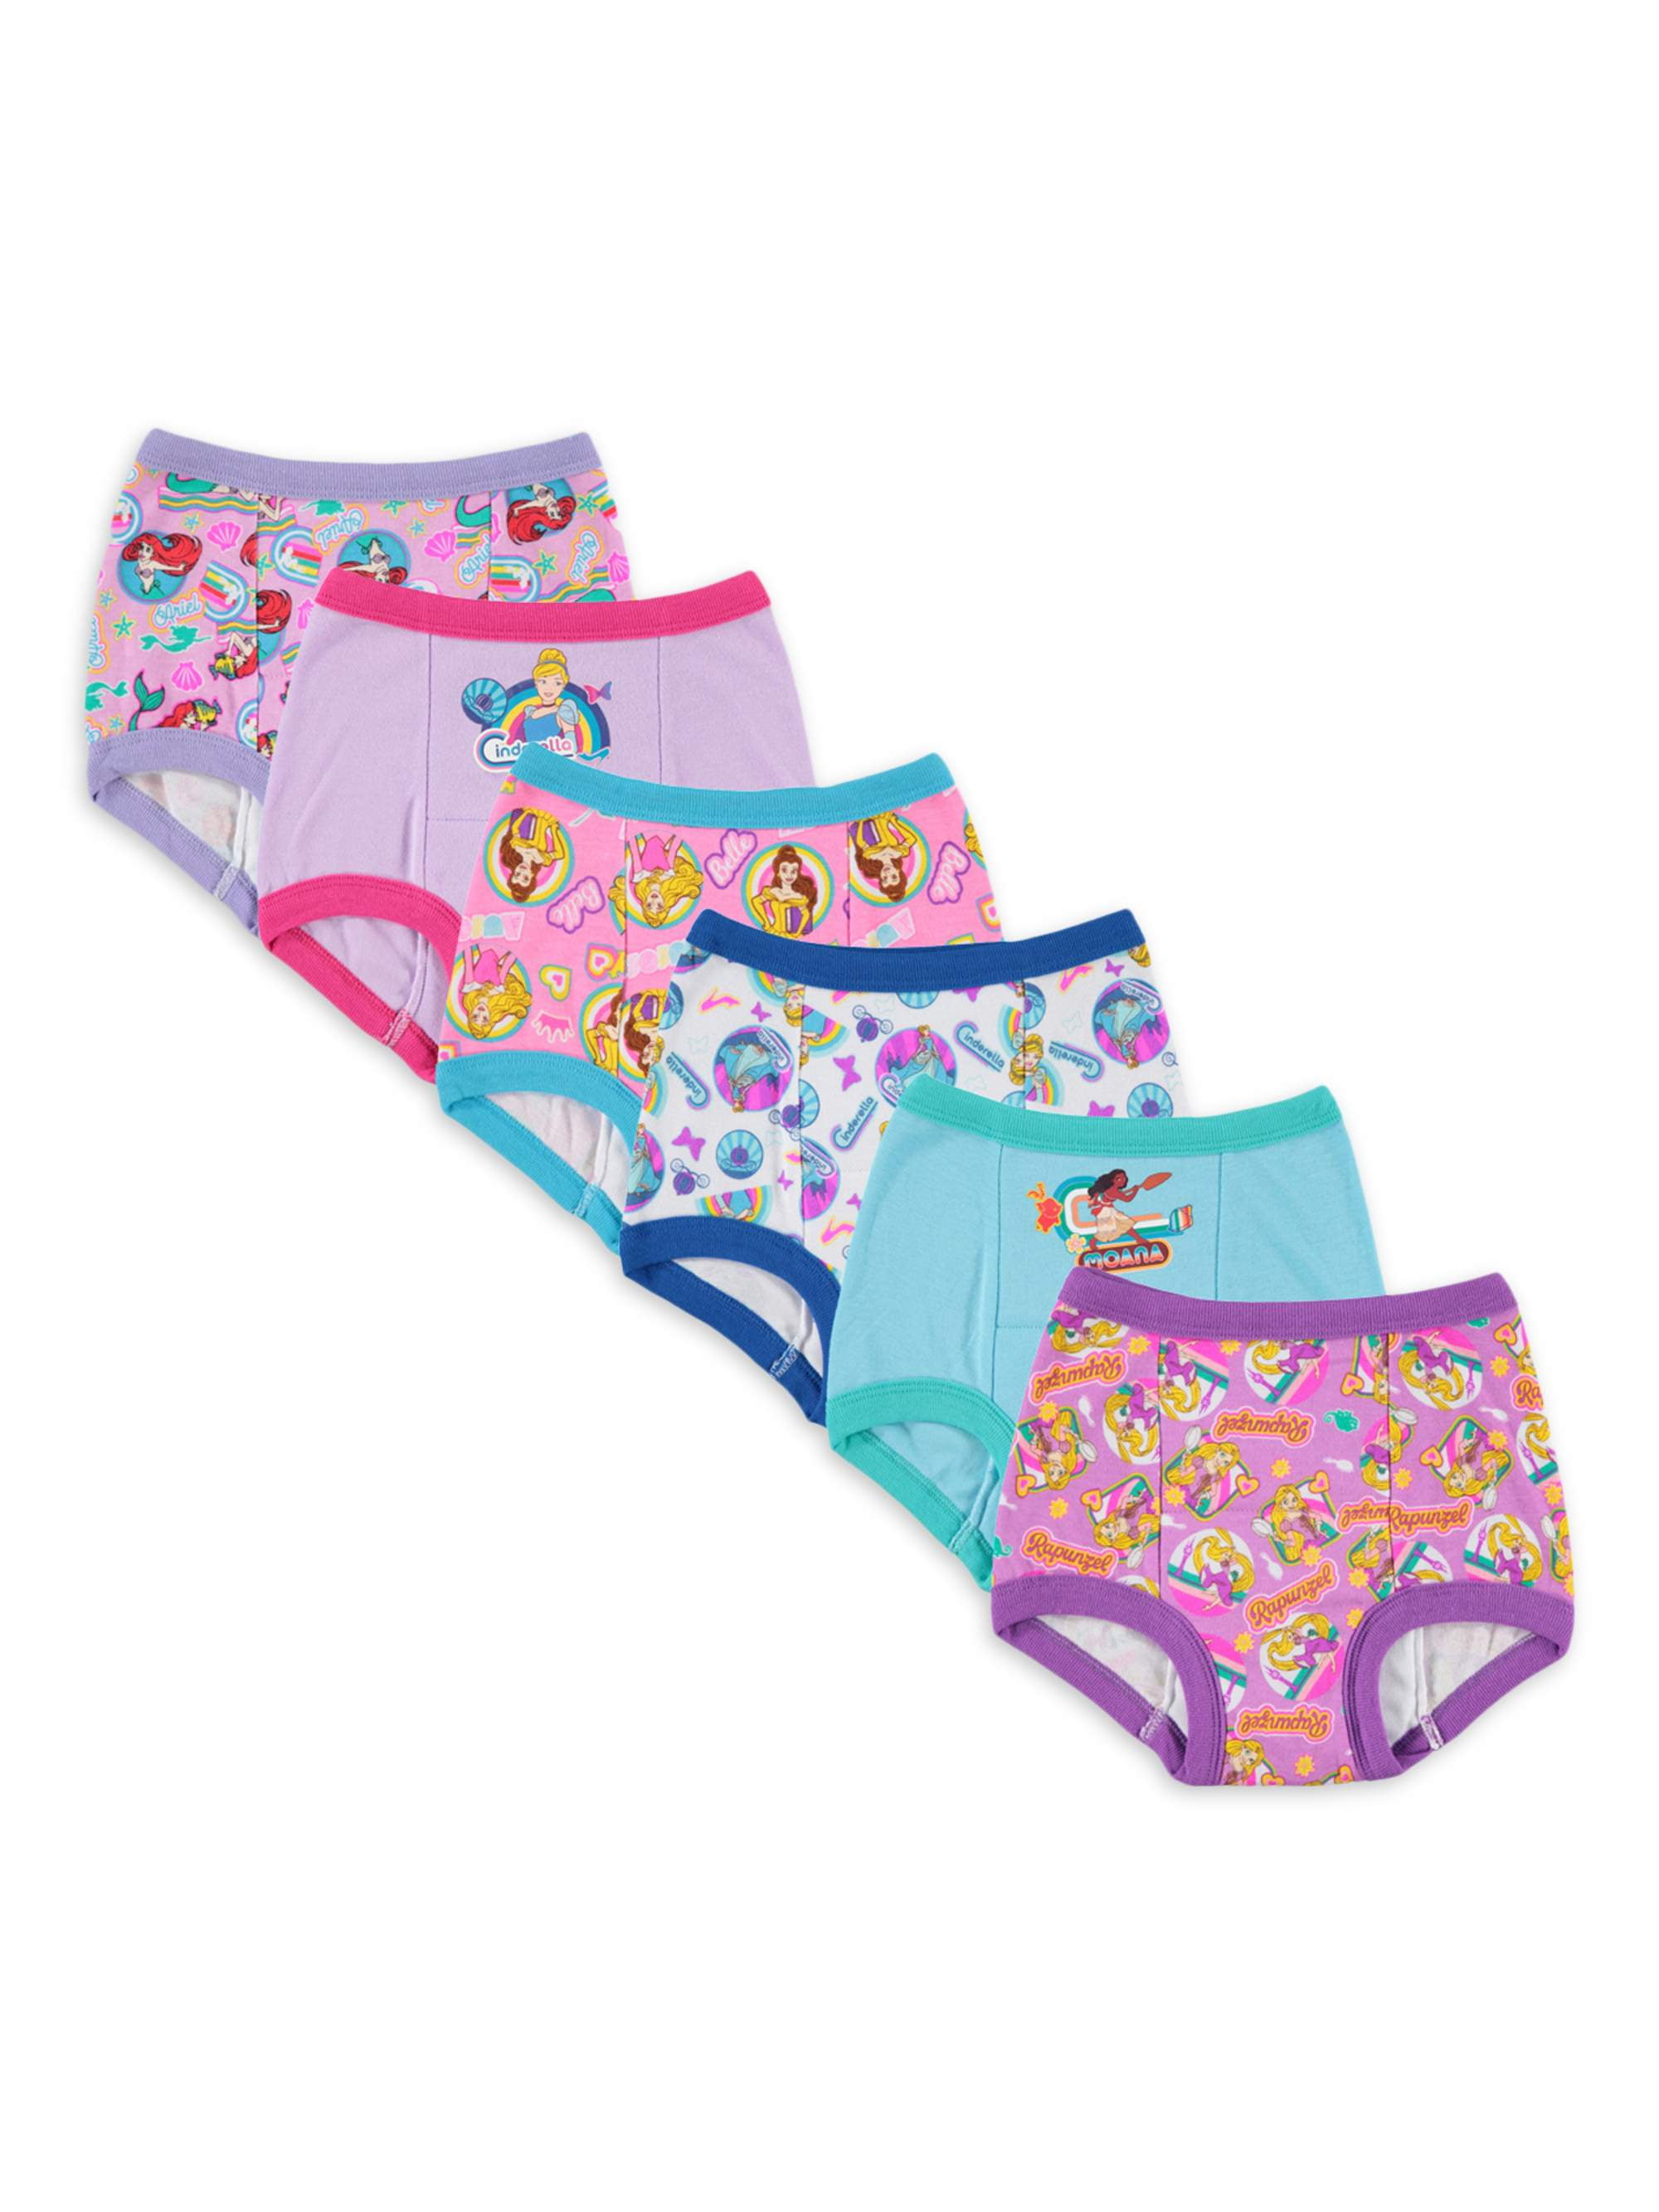 Disney Princess Toddler Girls' Training Pants, 6 Pack